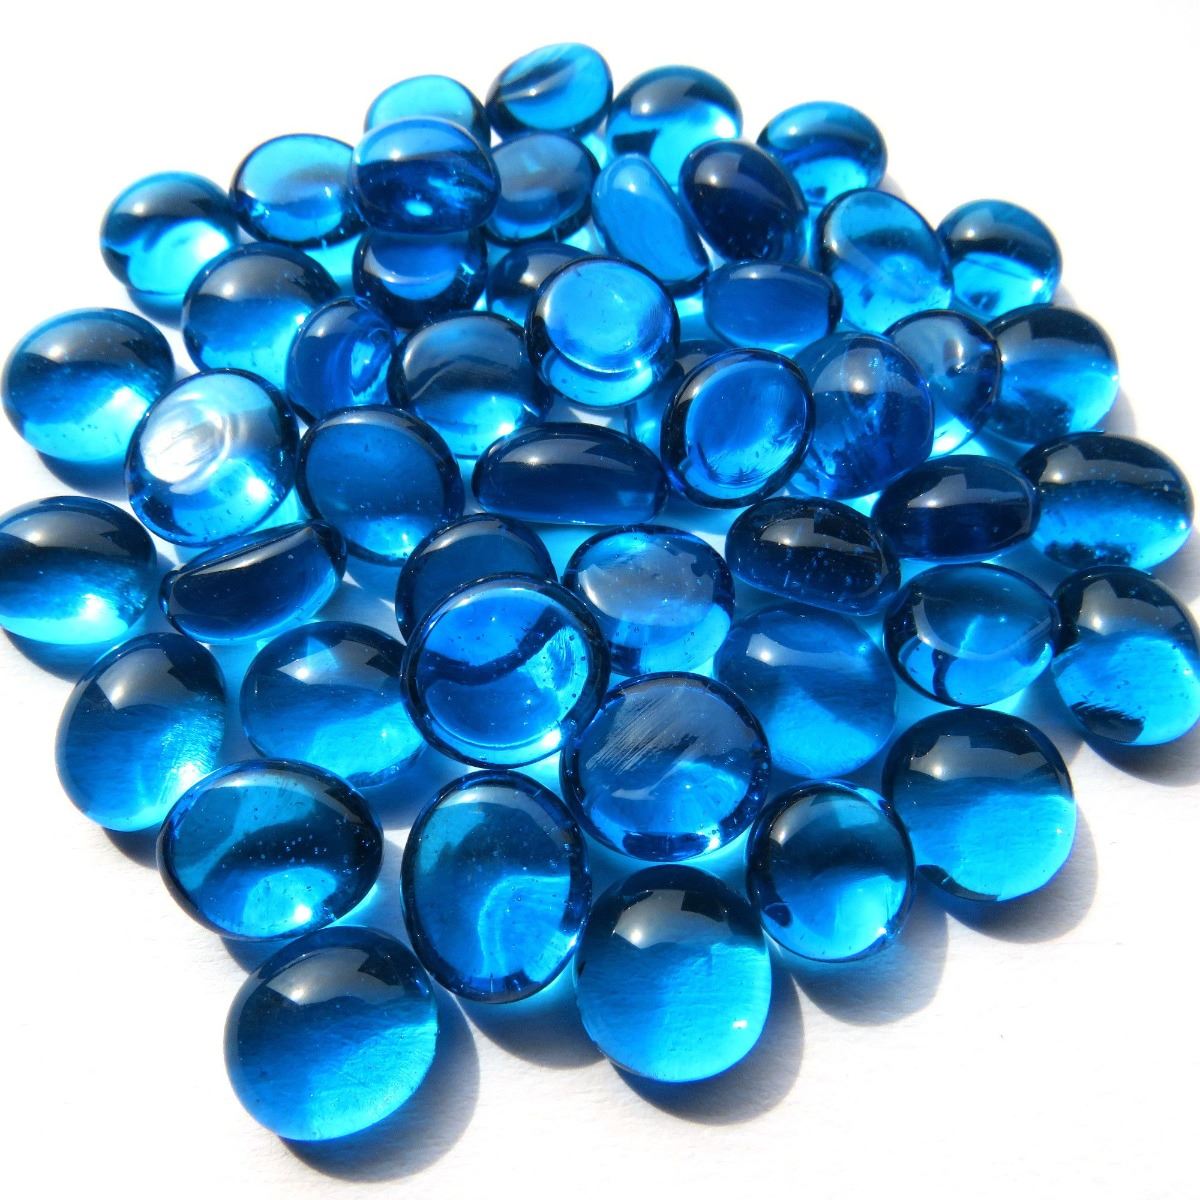 Mini Gems - Turquoise Crystal